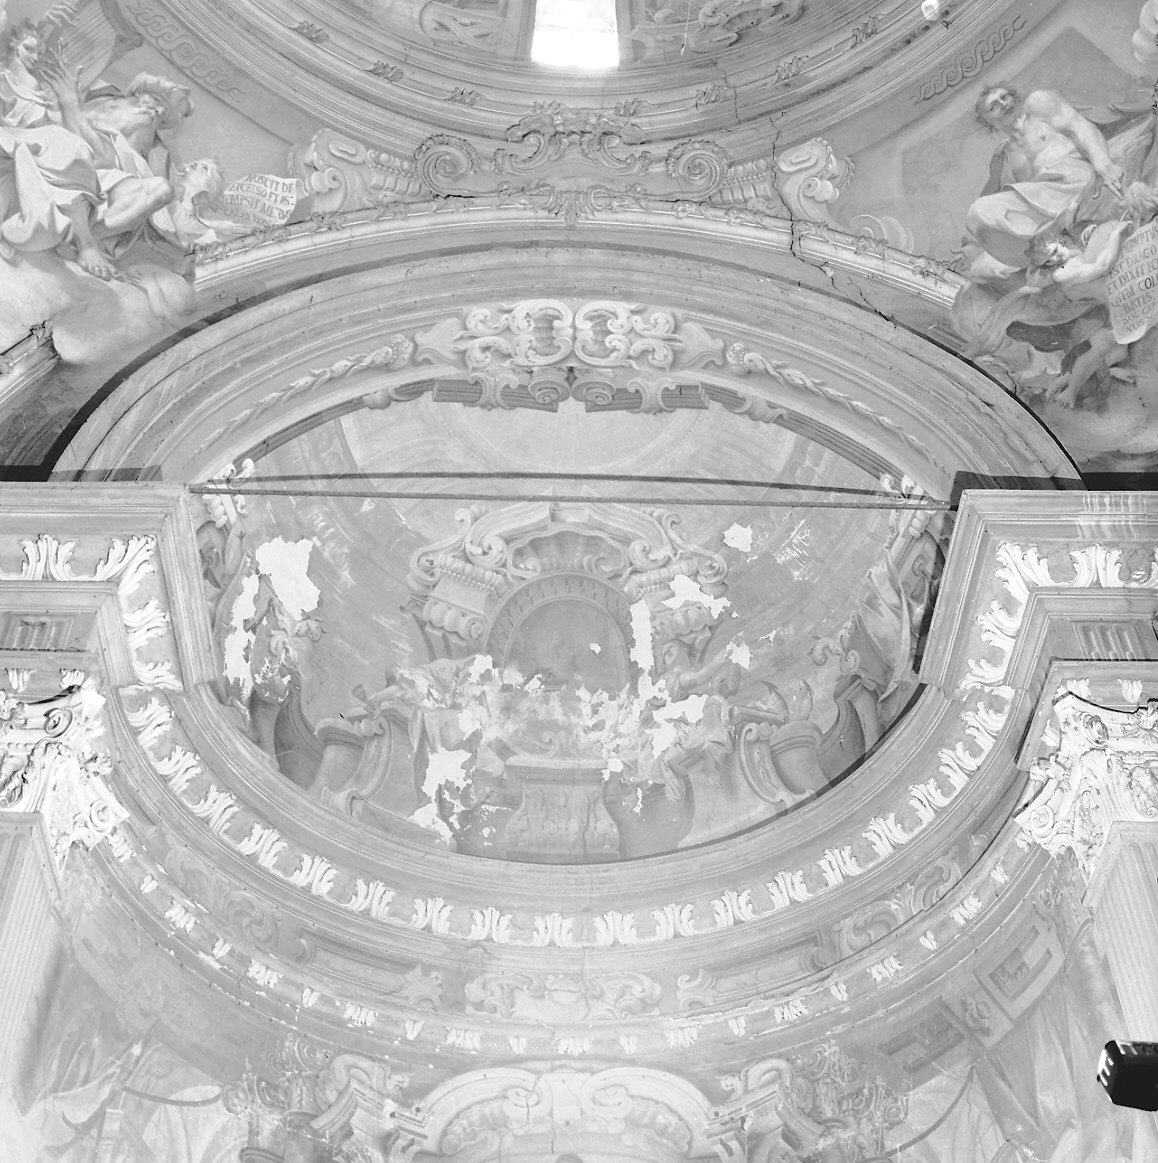 quadratura architettonica (decorazione pittorica, complesso decorativo) di Natali Francesco, Natali Giovan Battista, Natali Lorenzo (sec. XVIII)